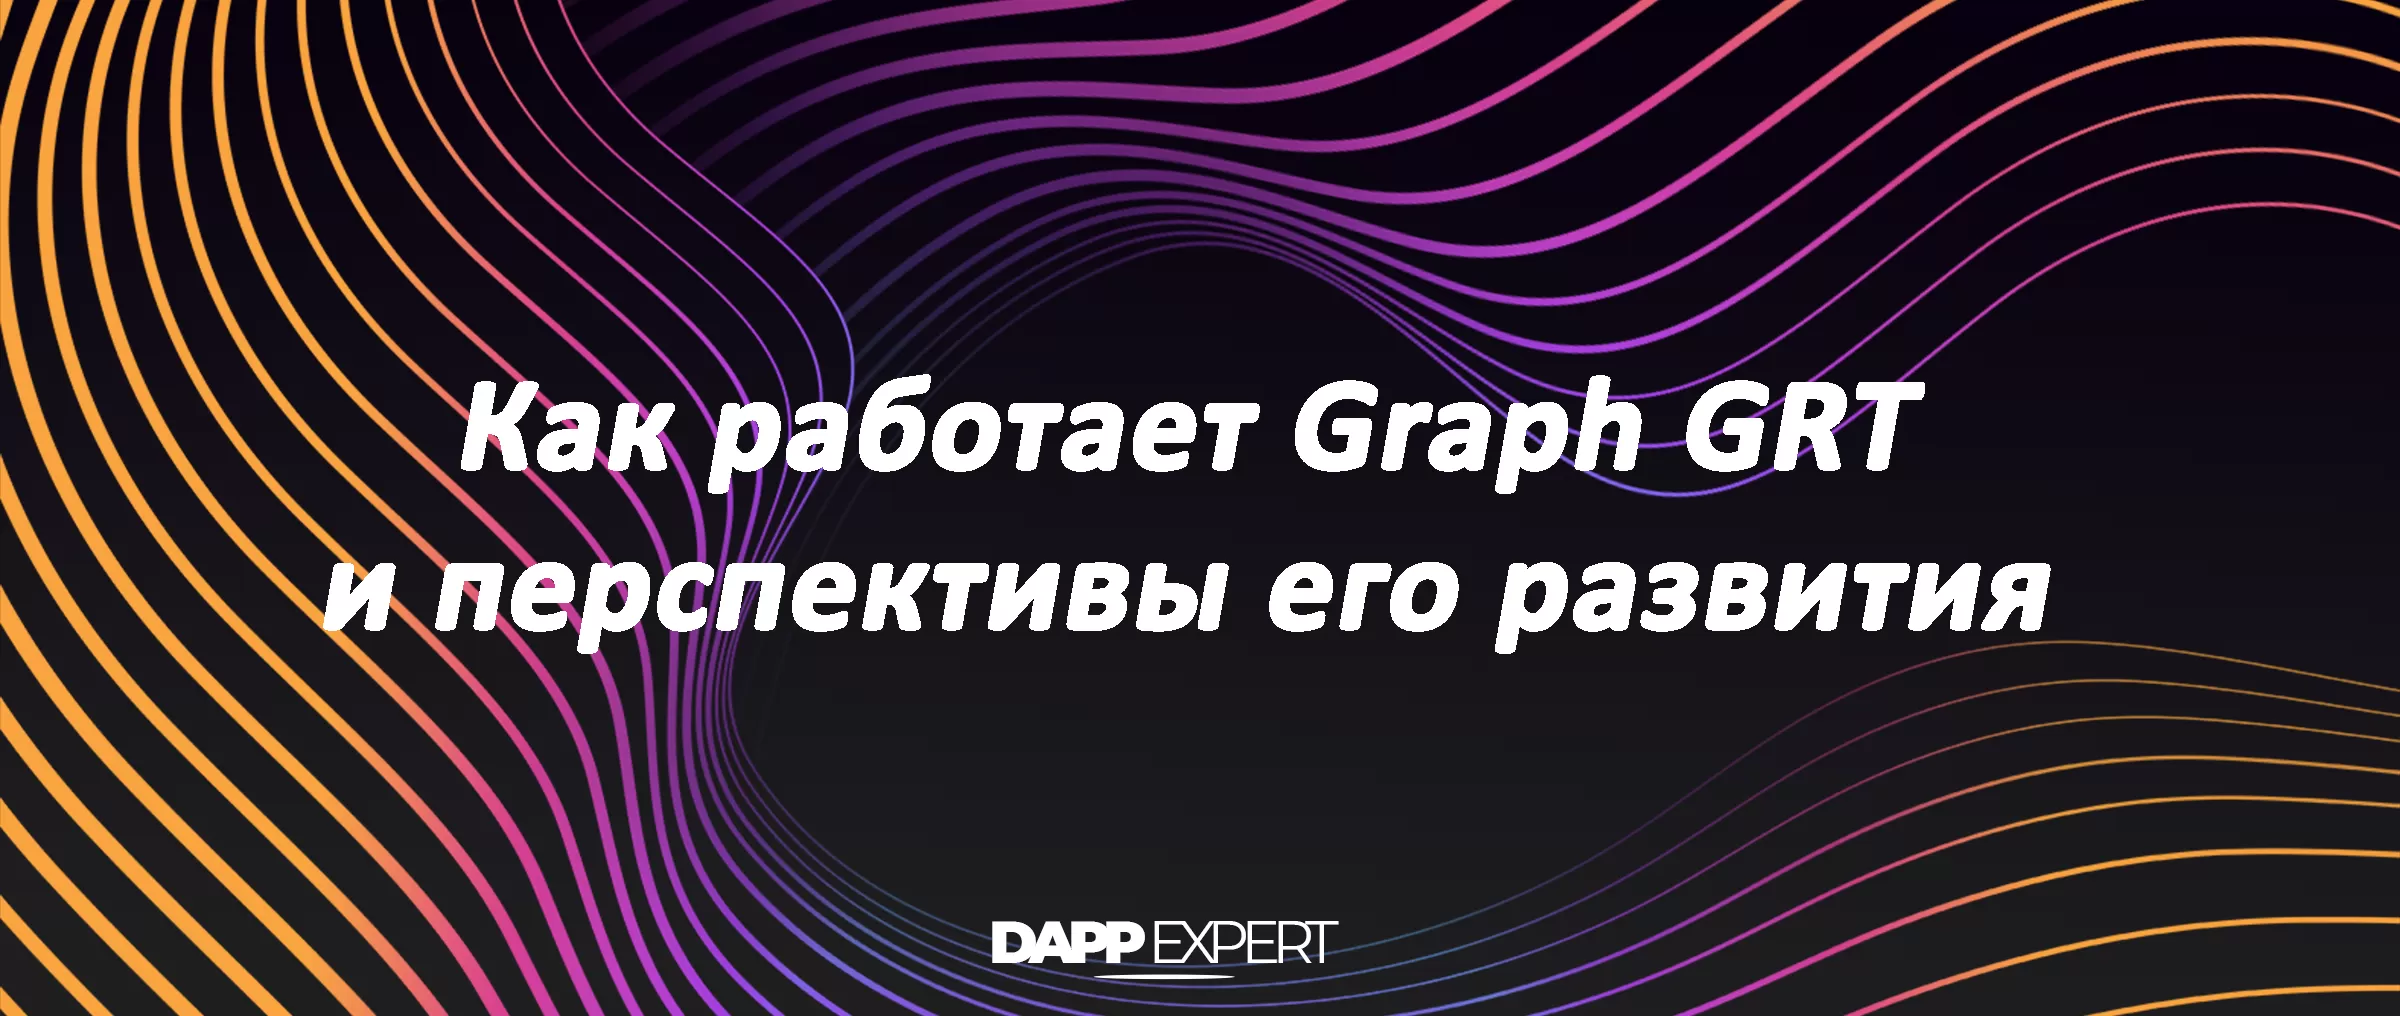 Что такое Graph GRT и где он используется?